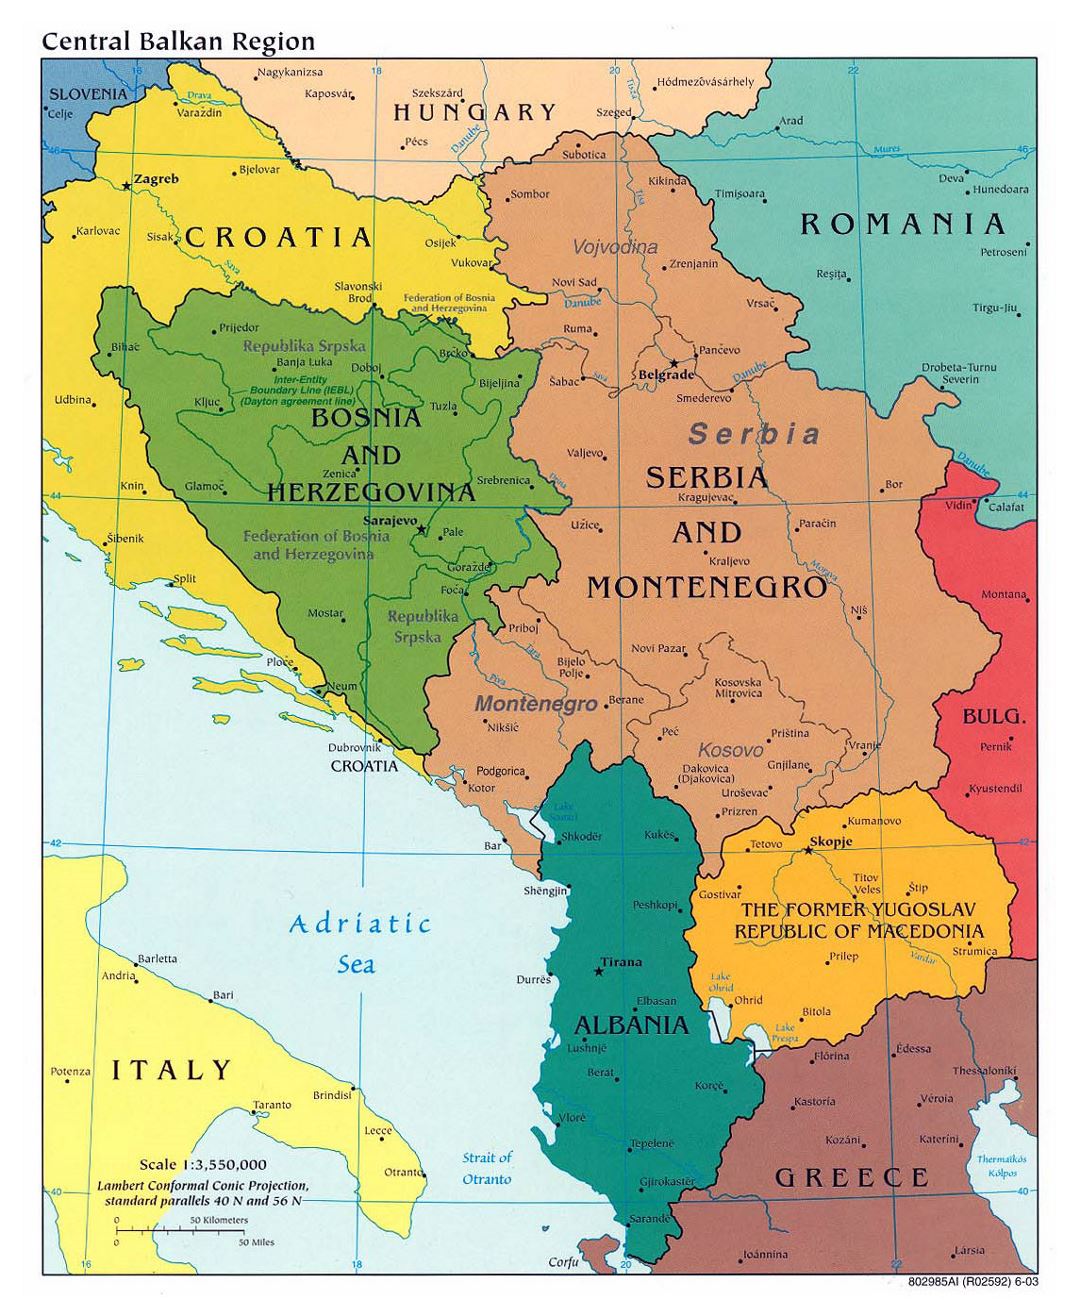 Mapa político detallada de la Región Central de los Balcanes con las principales ciudades - 2003